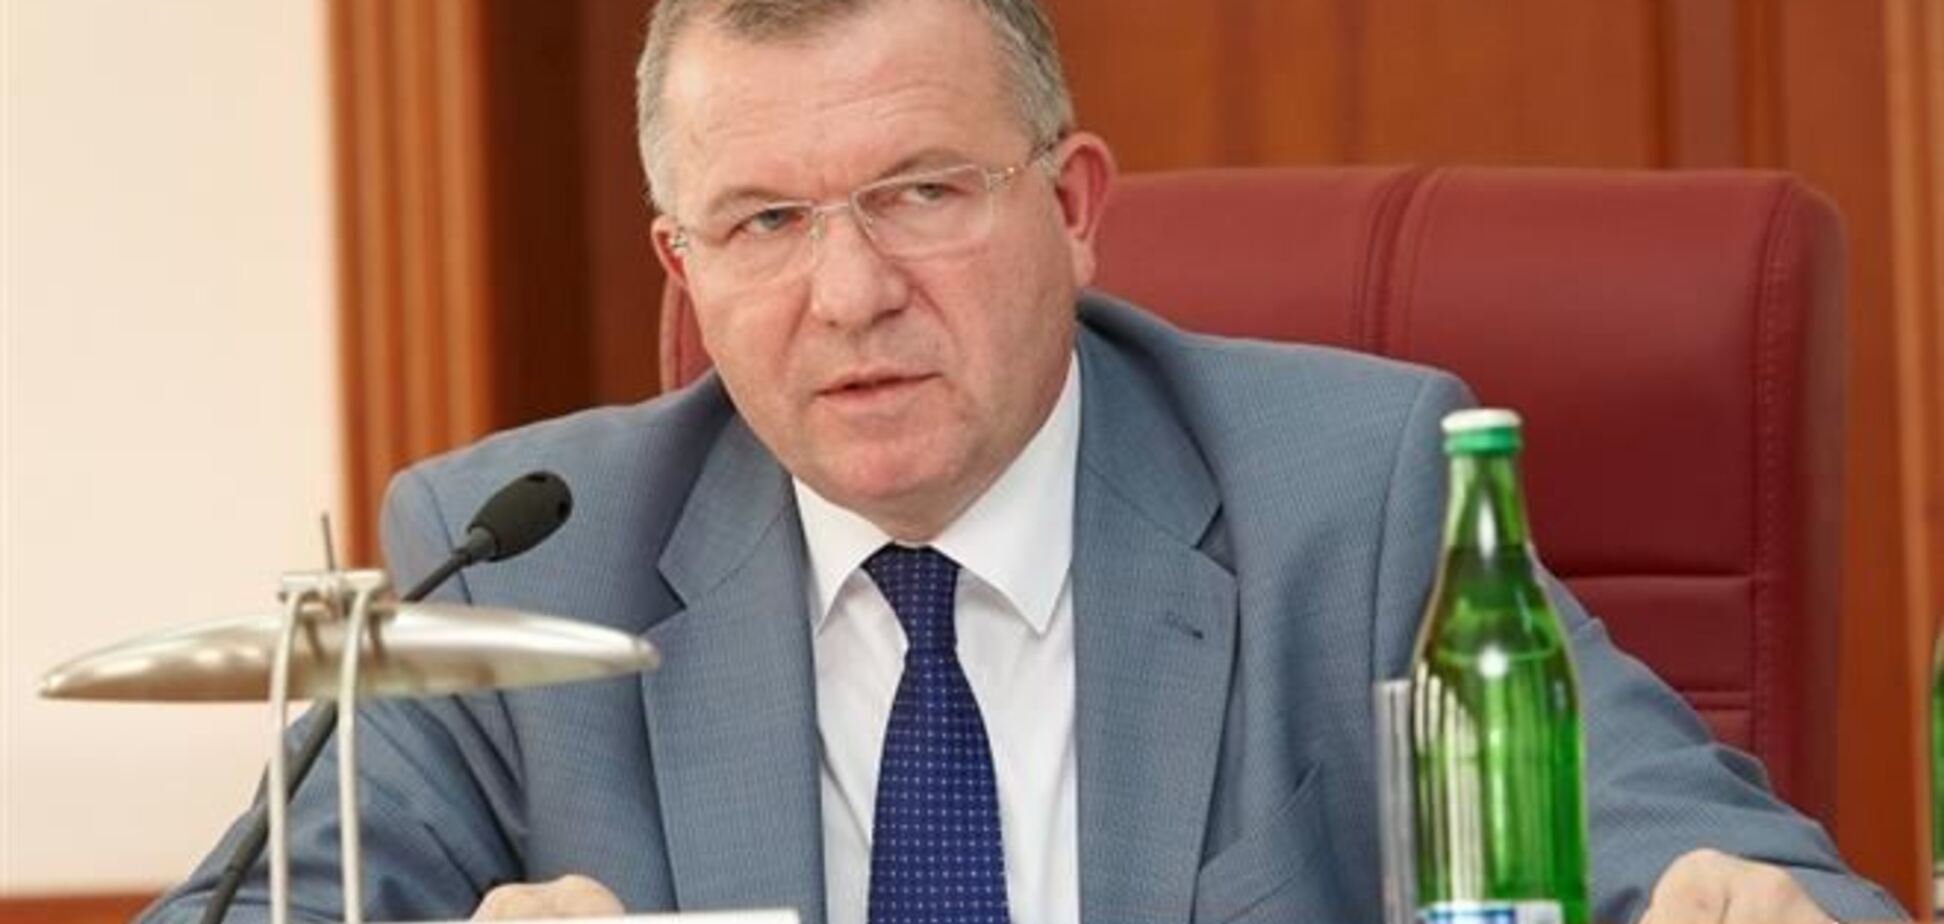 Обязанности Харьковского губернатора будет исполнять Валентин Дулуб